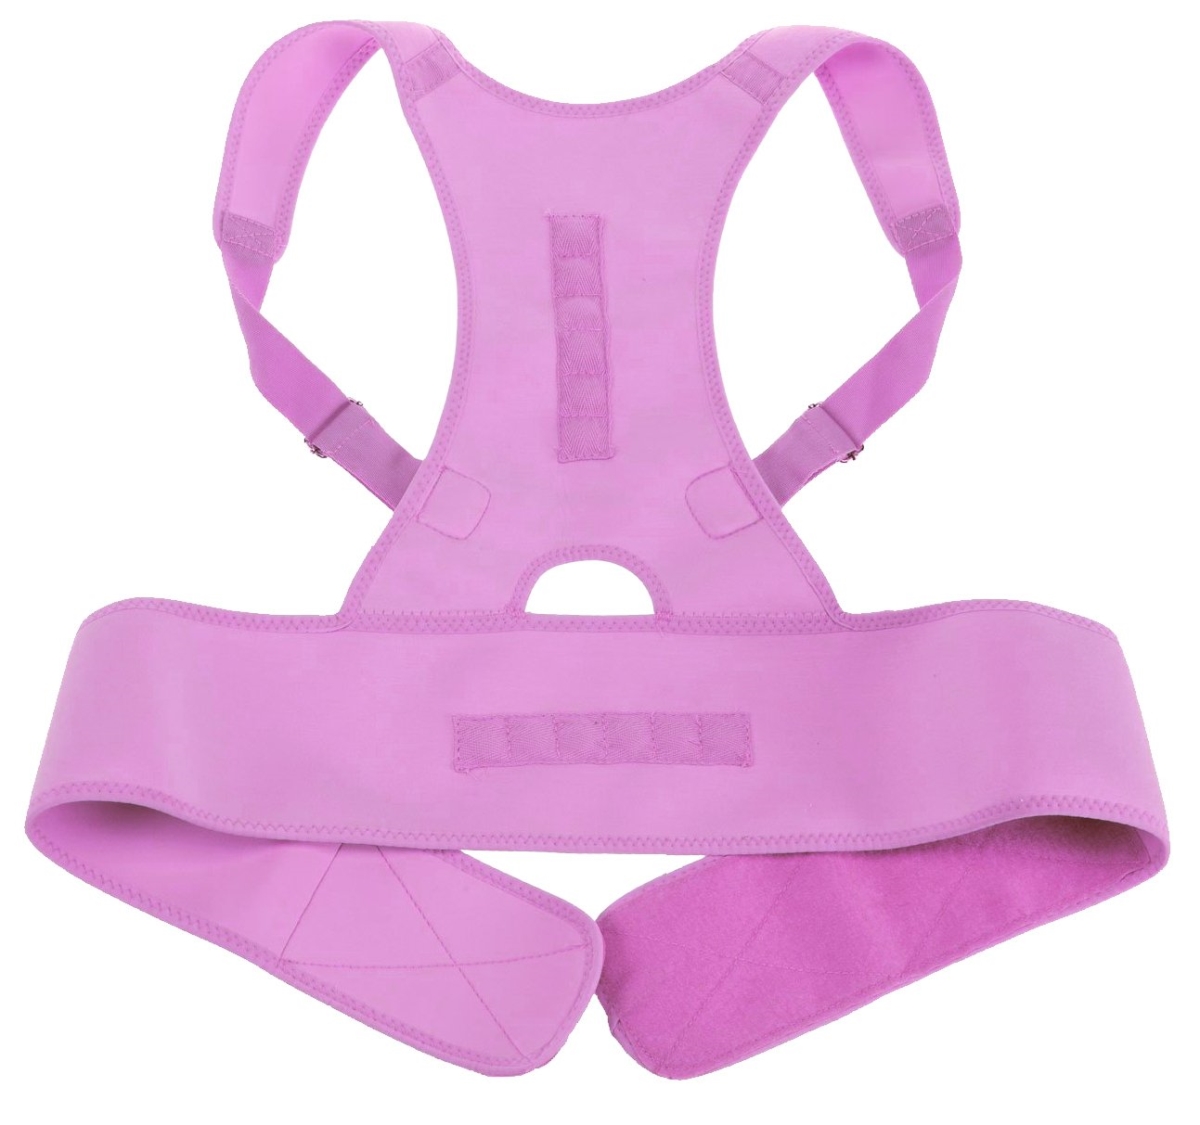 Lp4036549 Medical Grade Adjustable Magnetic Back Posture Support, Pink - Large